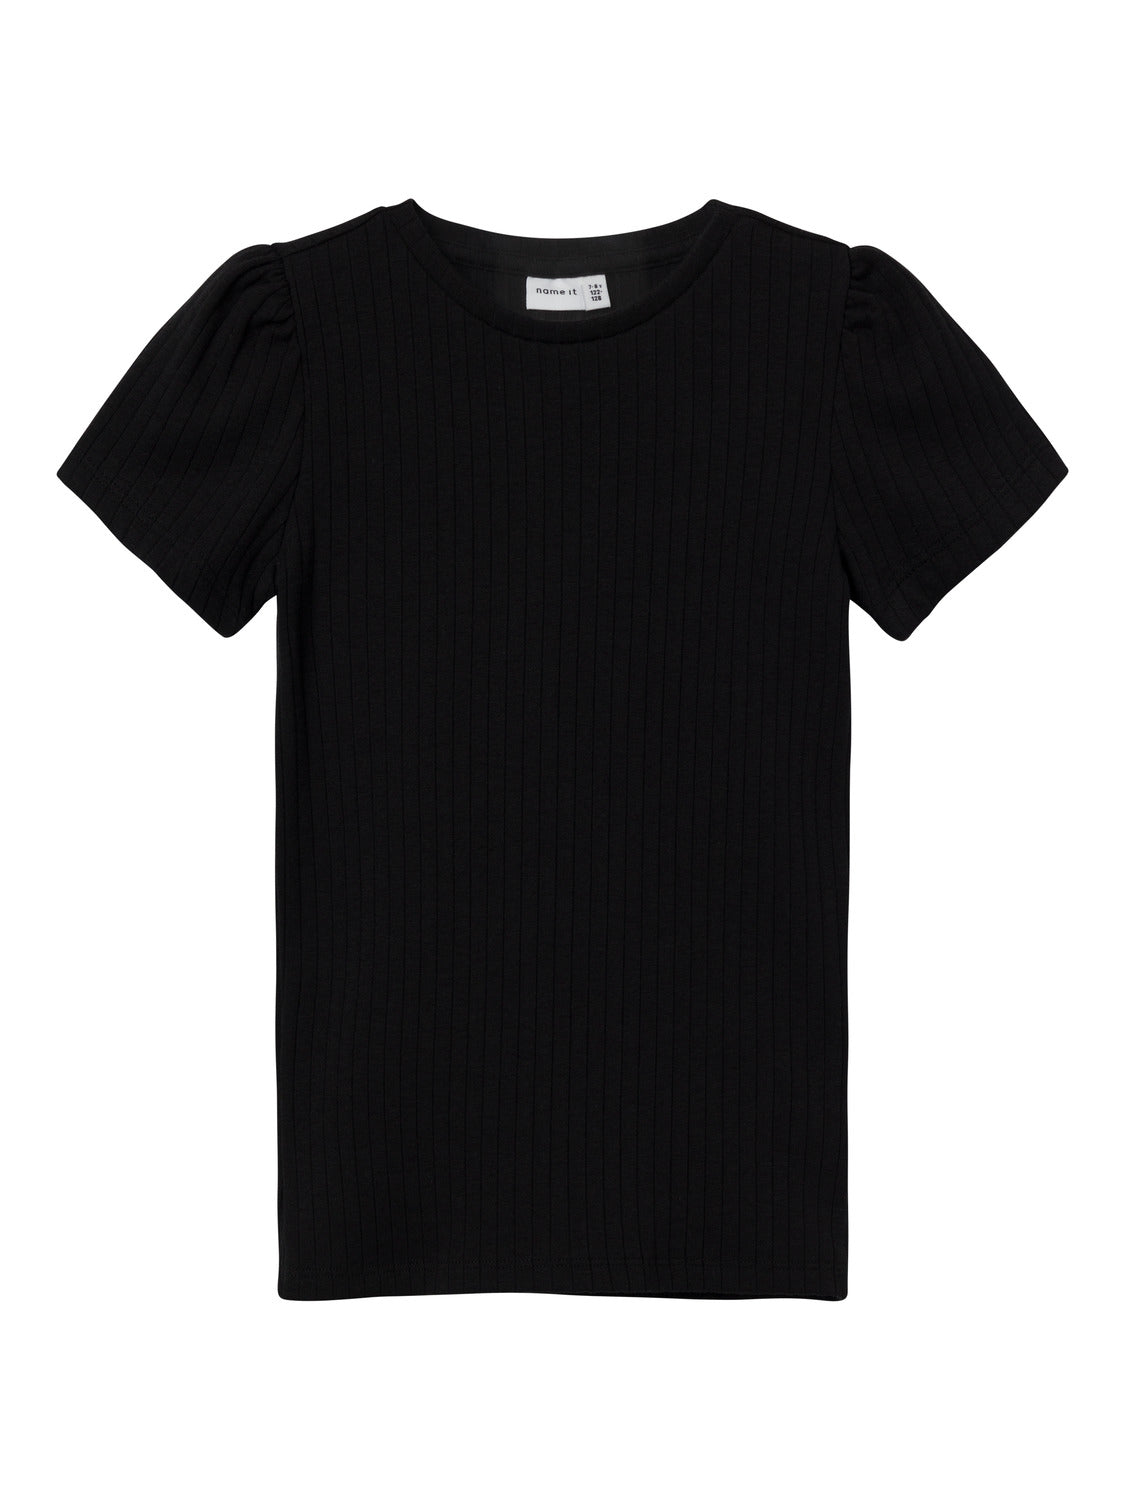 NKFNAJAA T-Shirts & Tops - Black